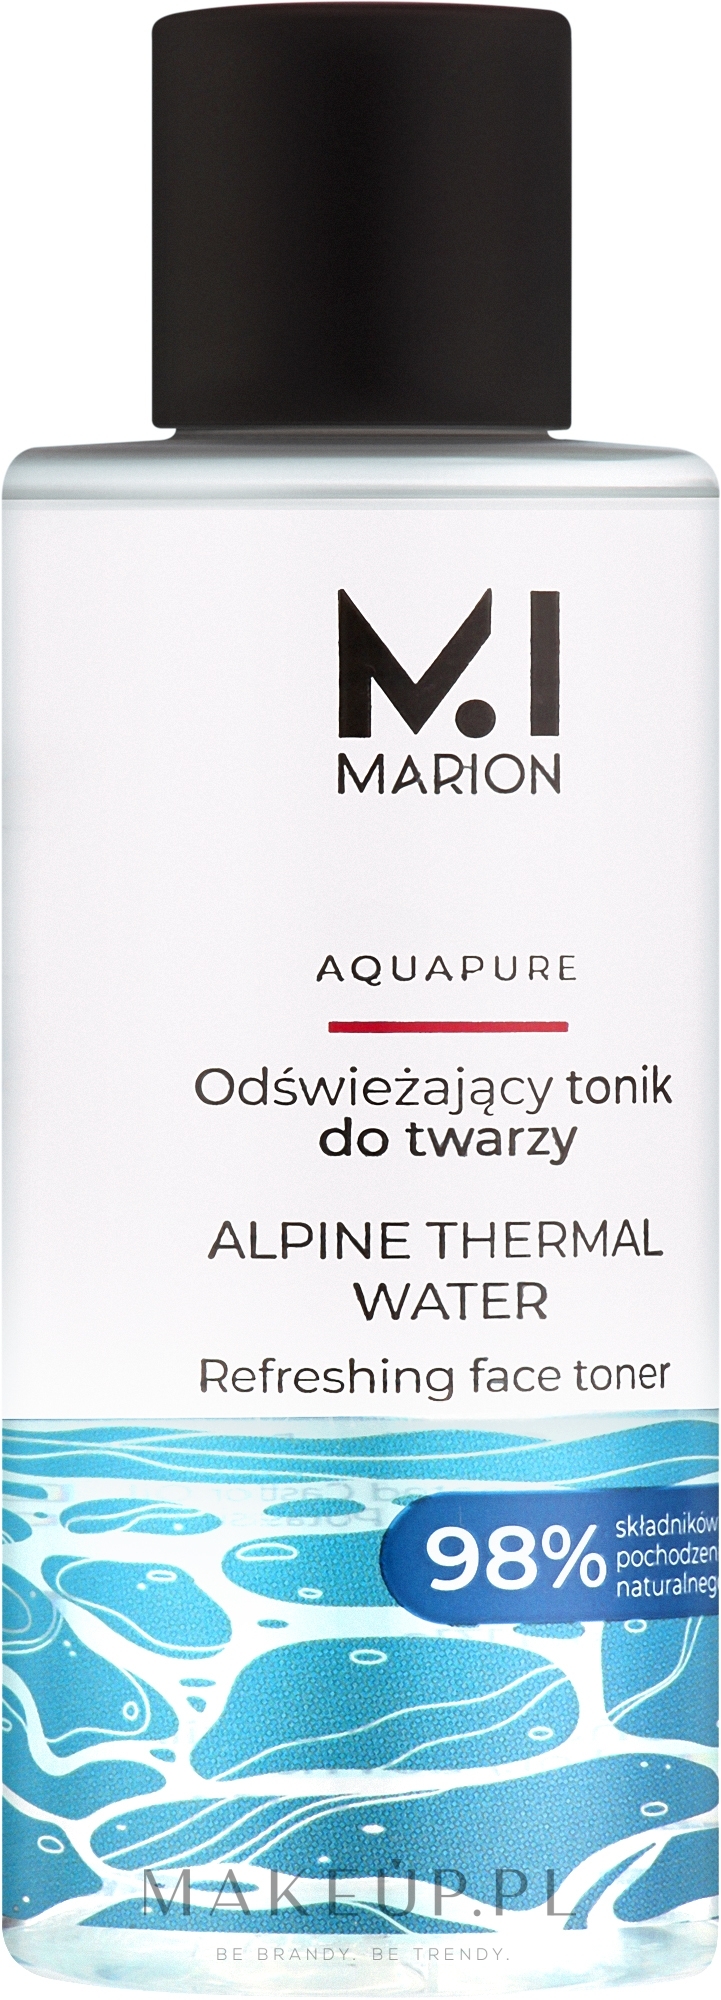 Odświeżający tonik do twarzy z wodą termalną - Marion Aquapure Alpine Thermal Water Face Toner — Zdjęcie 150 ml